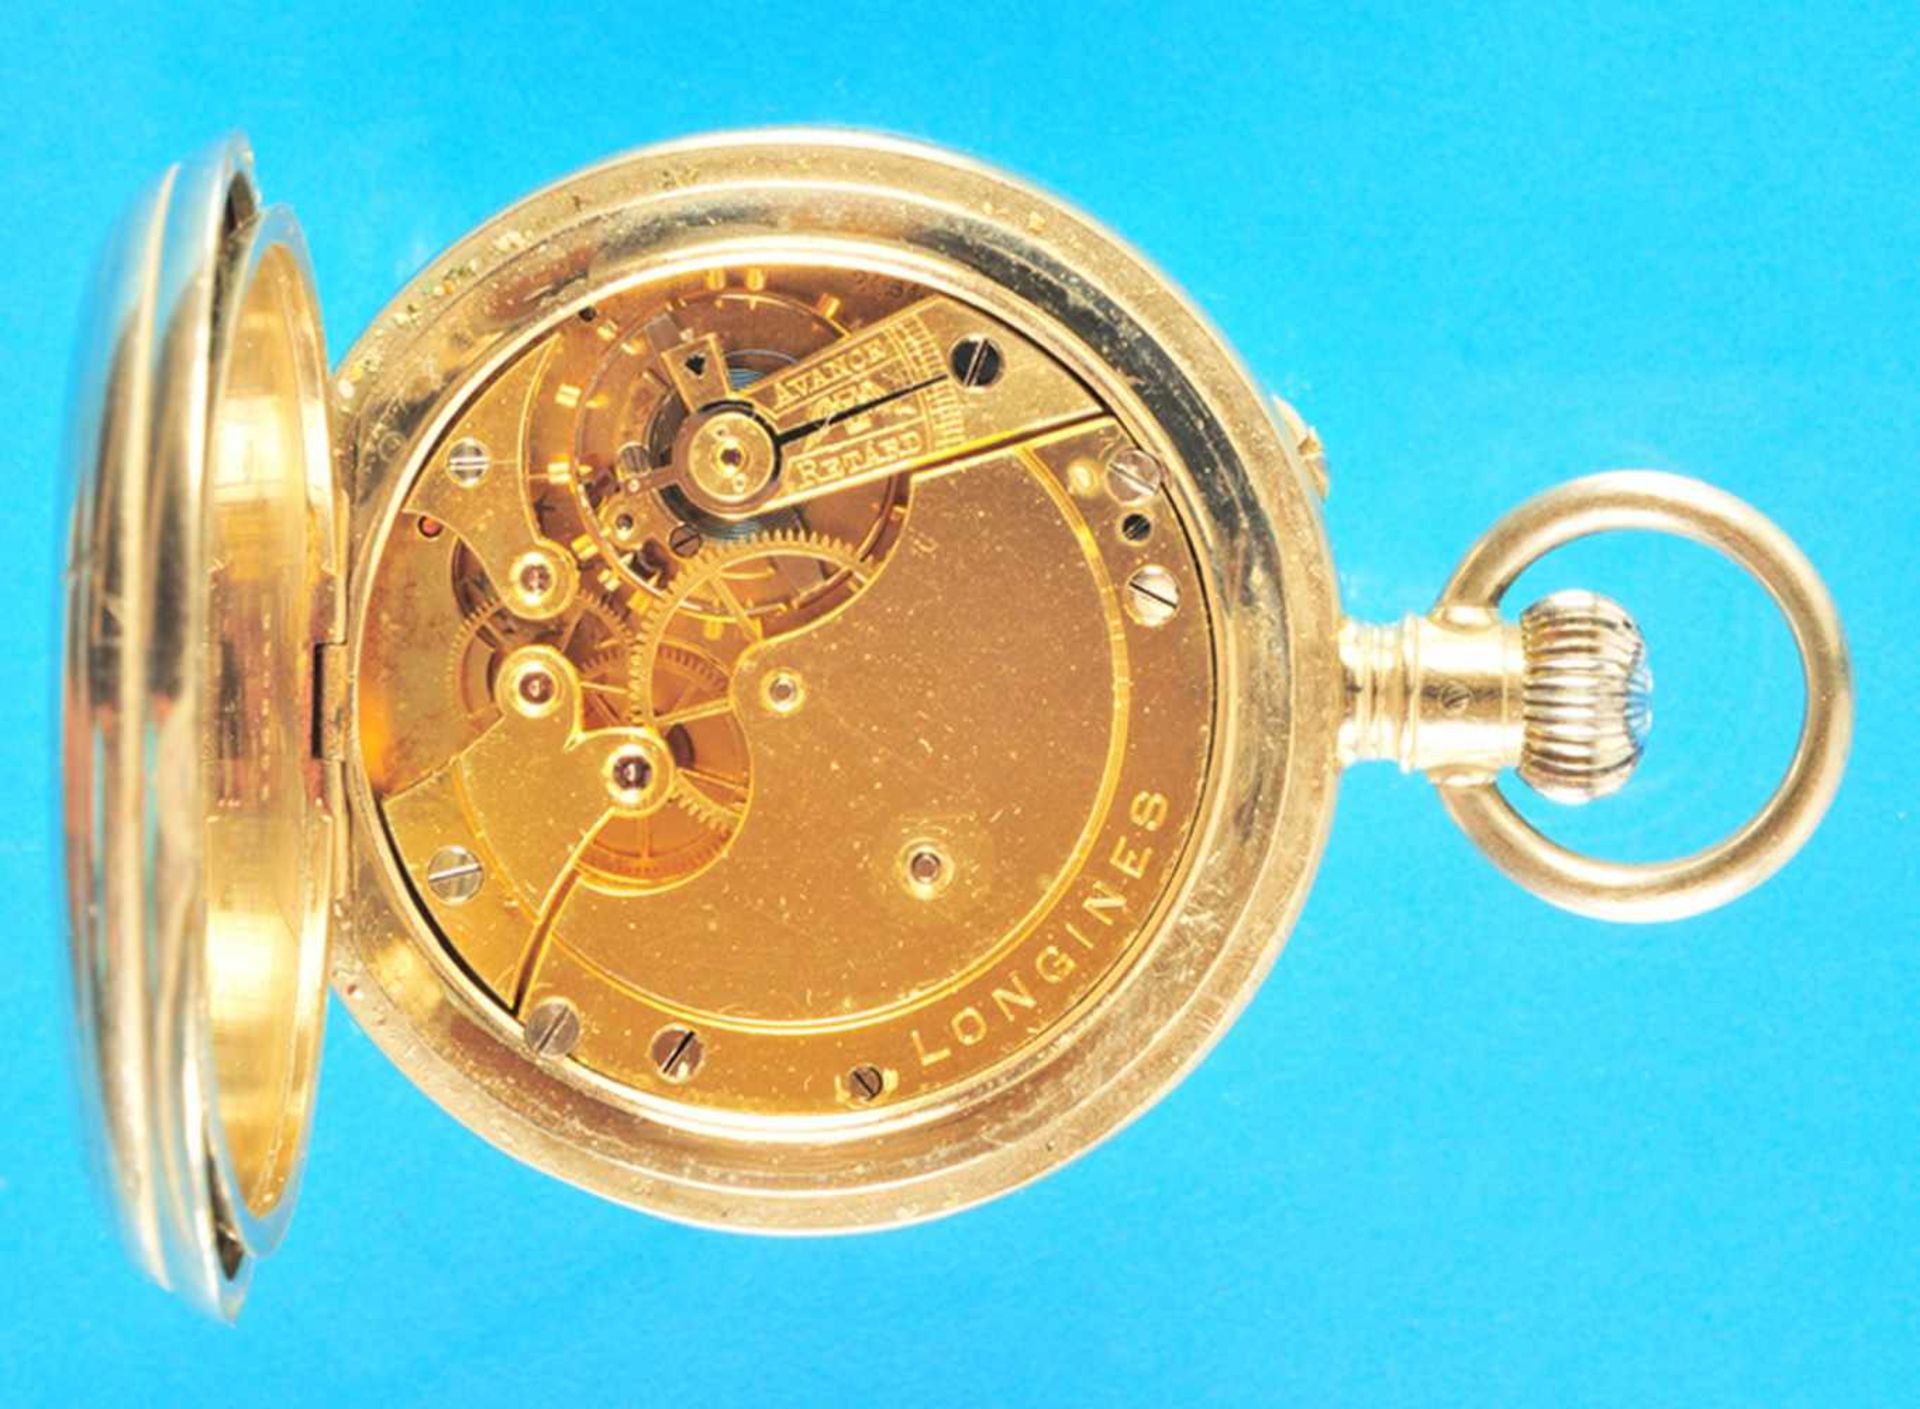 Metal pocket watch, LonginesMetalltaschenuhr, Longines, mit Bergwerksymbol verziertes Gehäuse, - Bild 2 aus 3